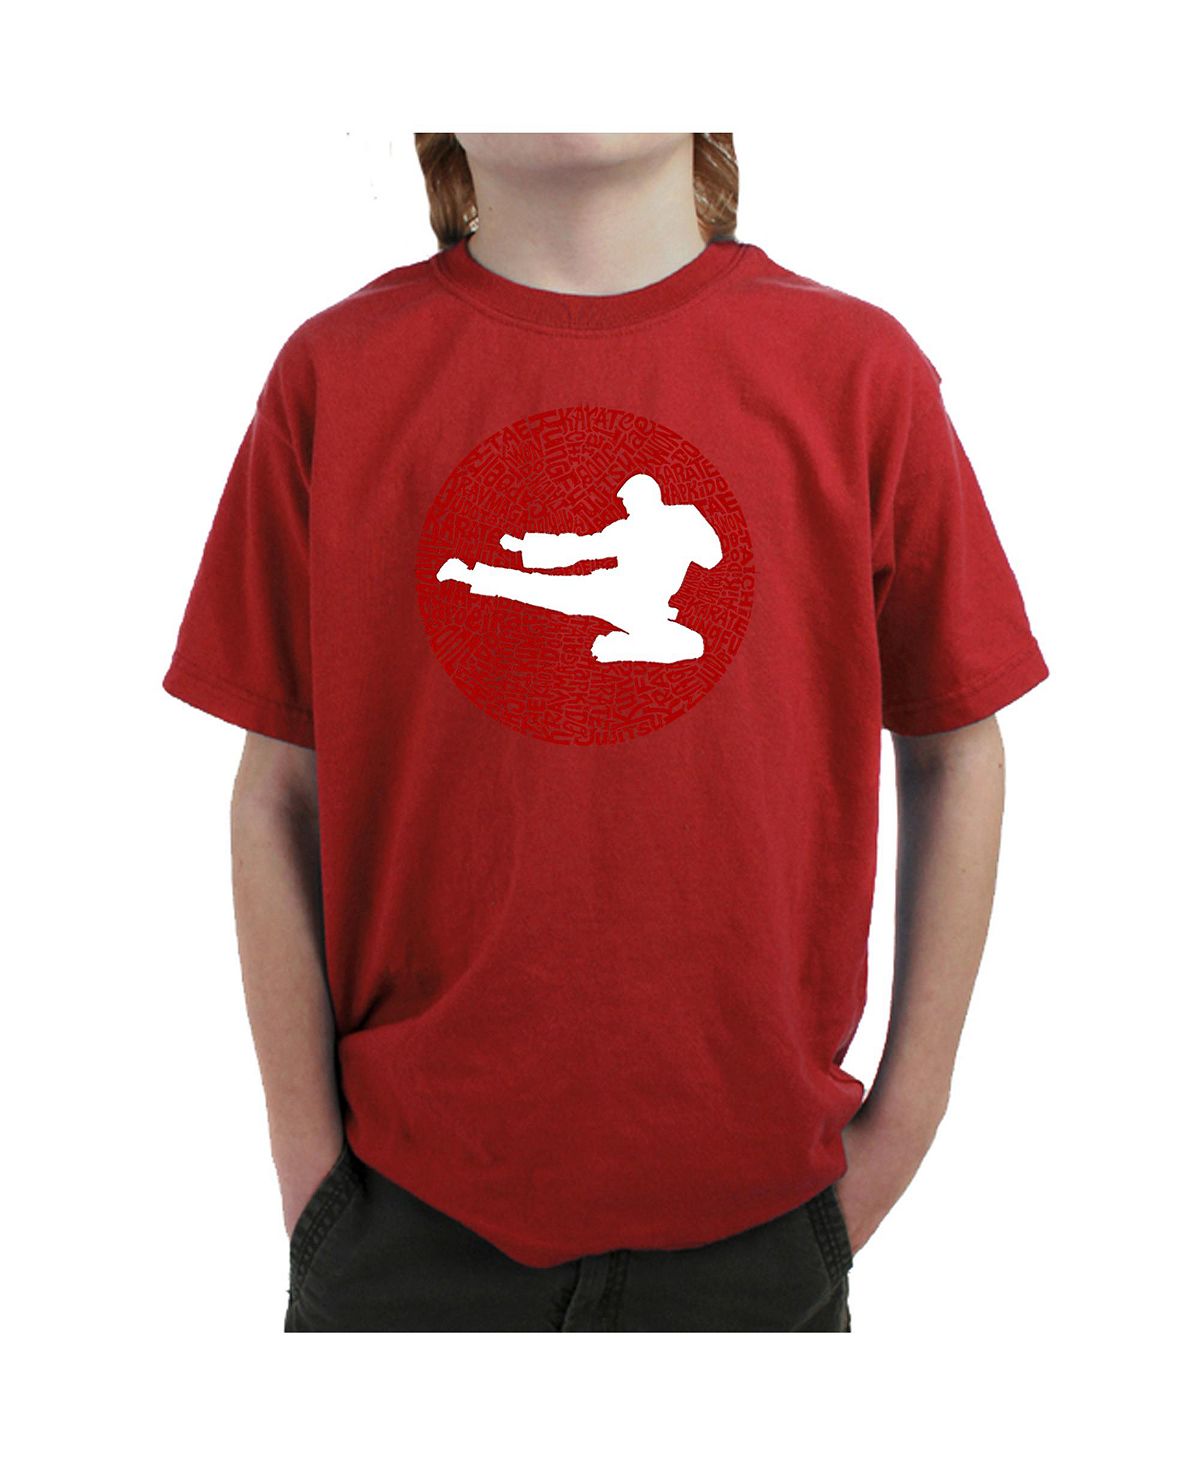 Футболка Big Boy's Word Art - Виды боевых искусств LA Pop Art мужская футболка с длинными рукавами виды боевых искусств word art la pop art черный